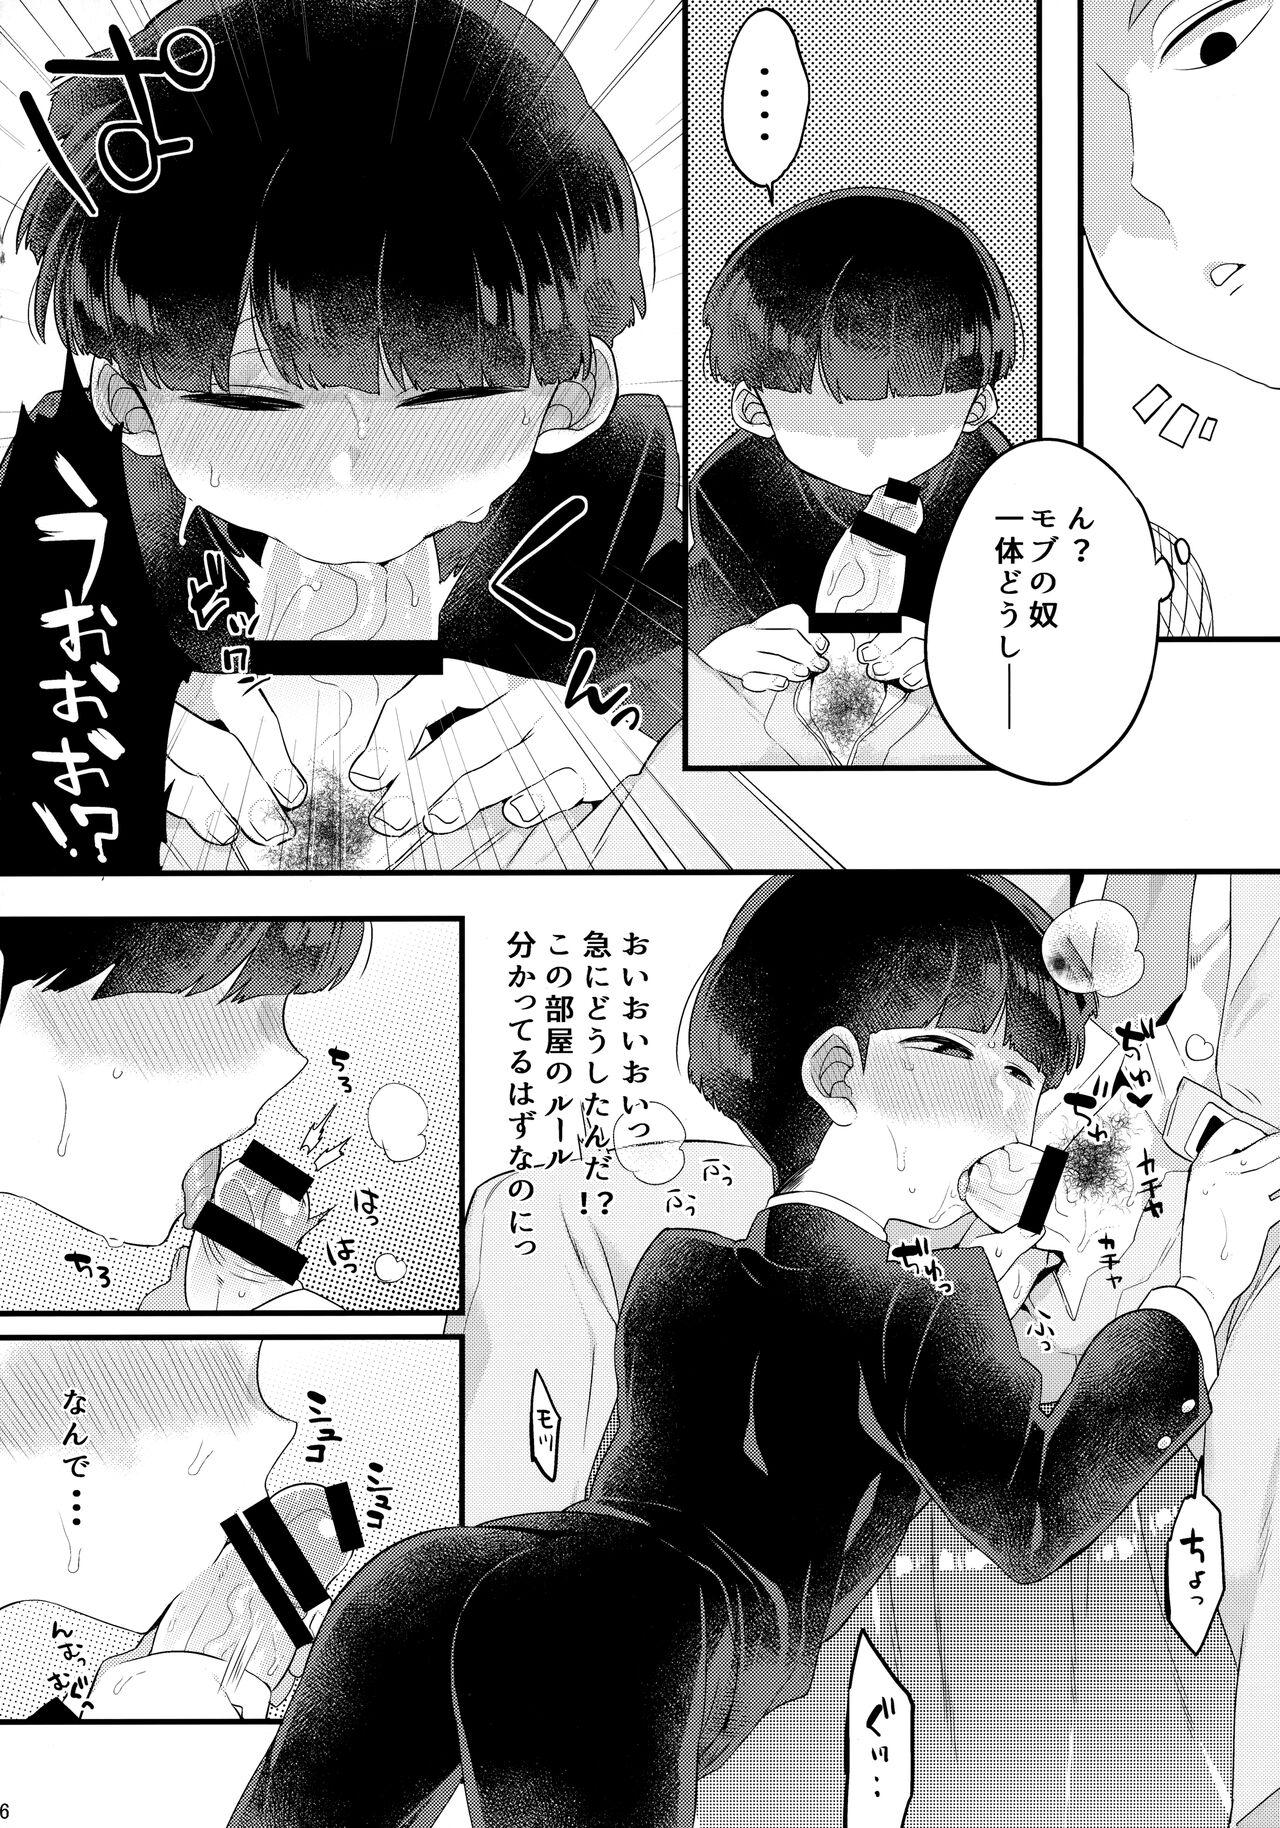 Sixtynine ××× Shinai to de Rarenai Shitei. - Mob psycho 100 Mujer - Page 7